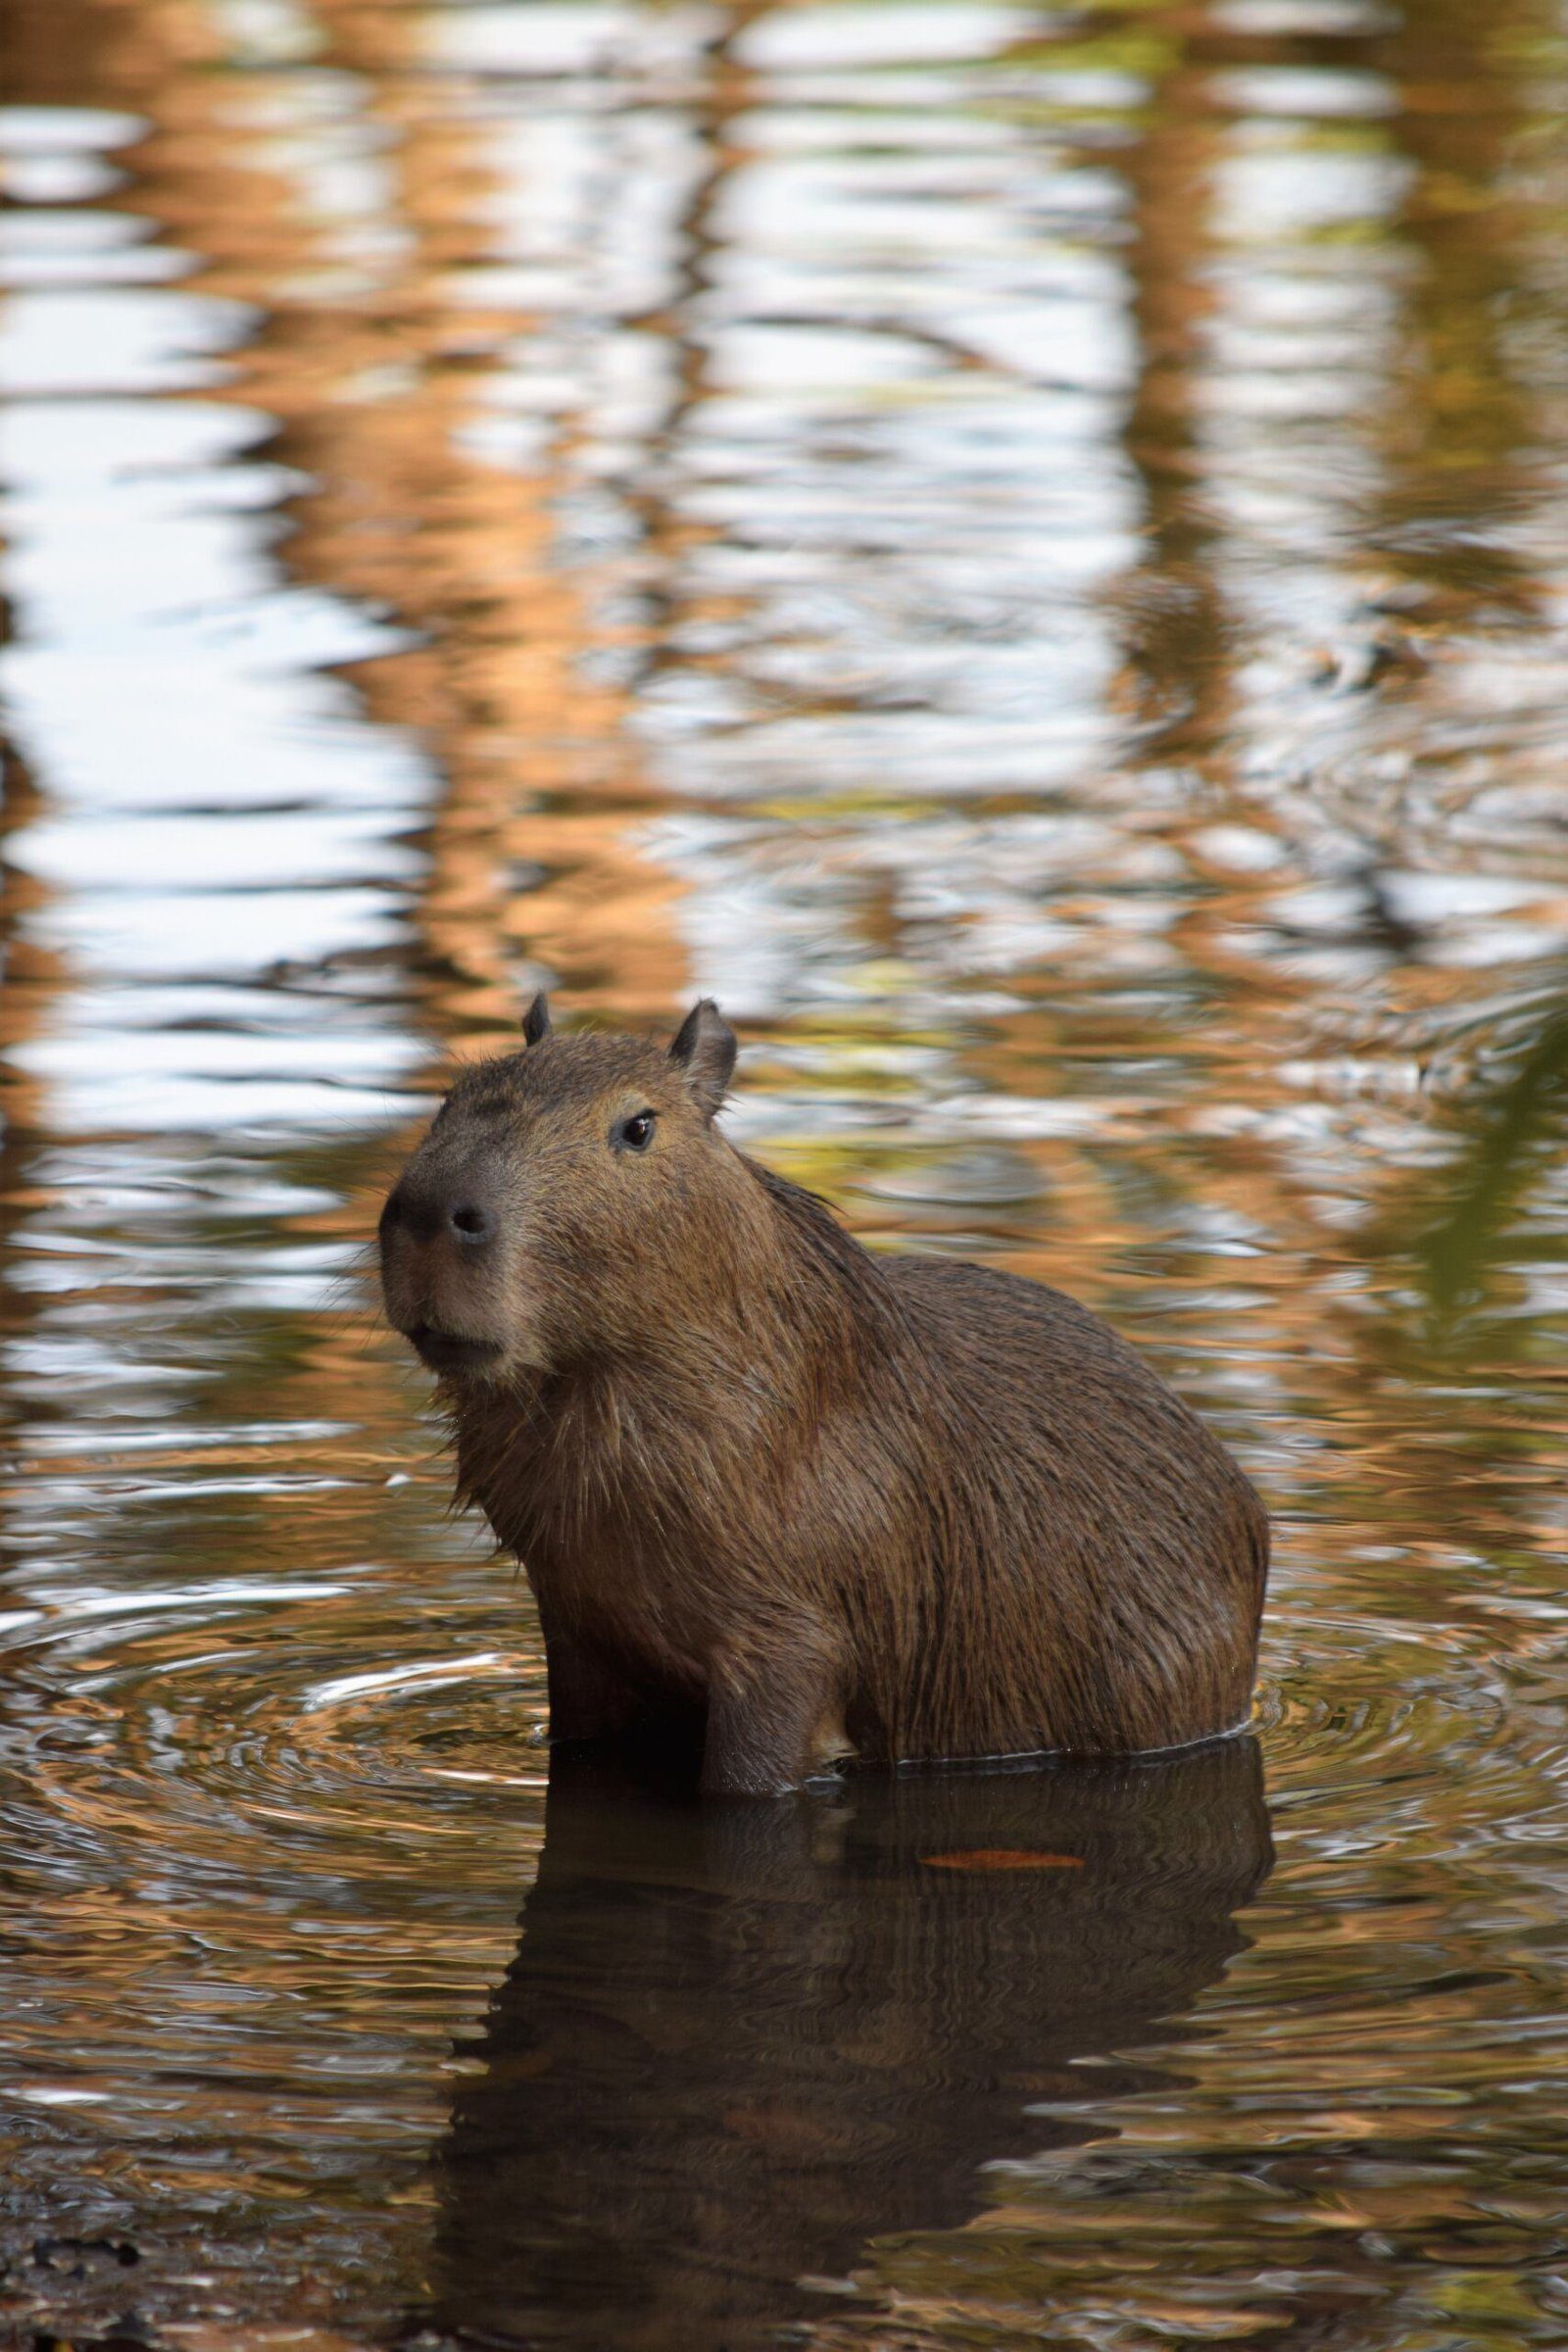 Can you legally own a pet capybara?